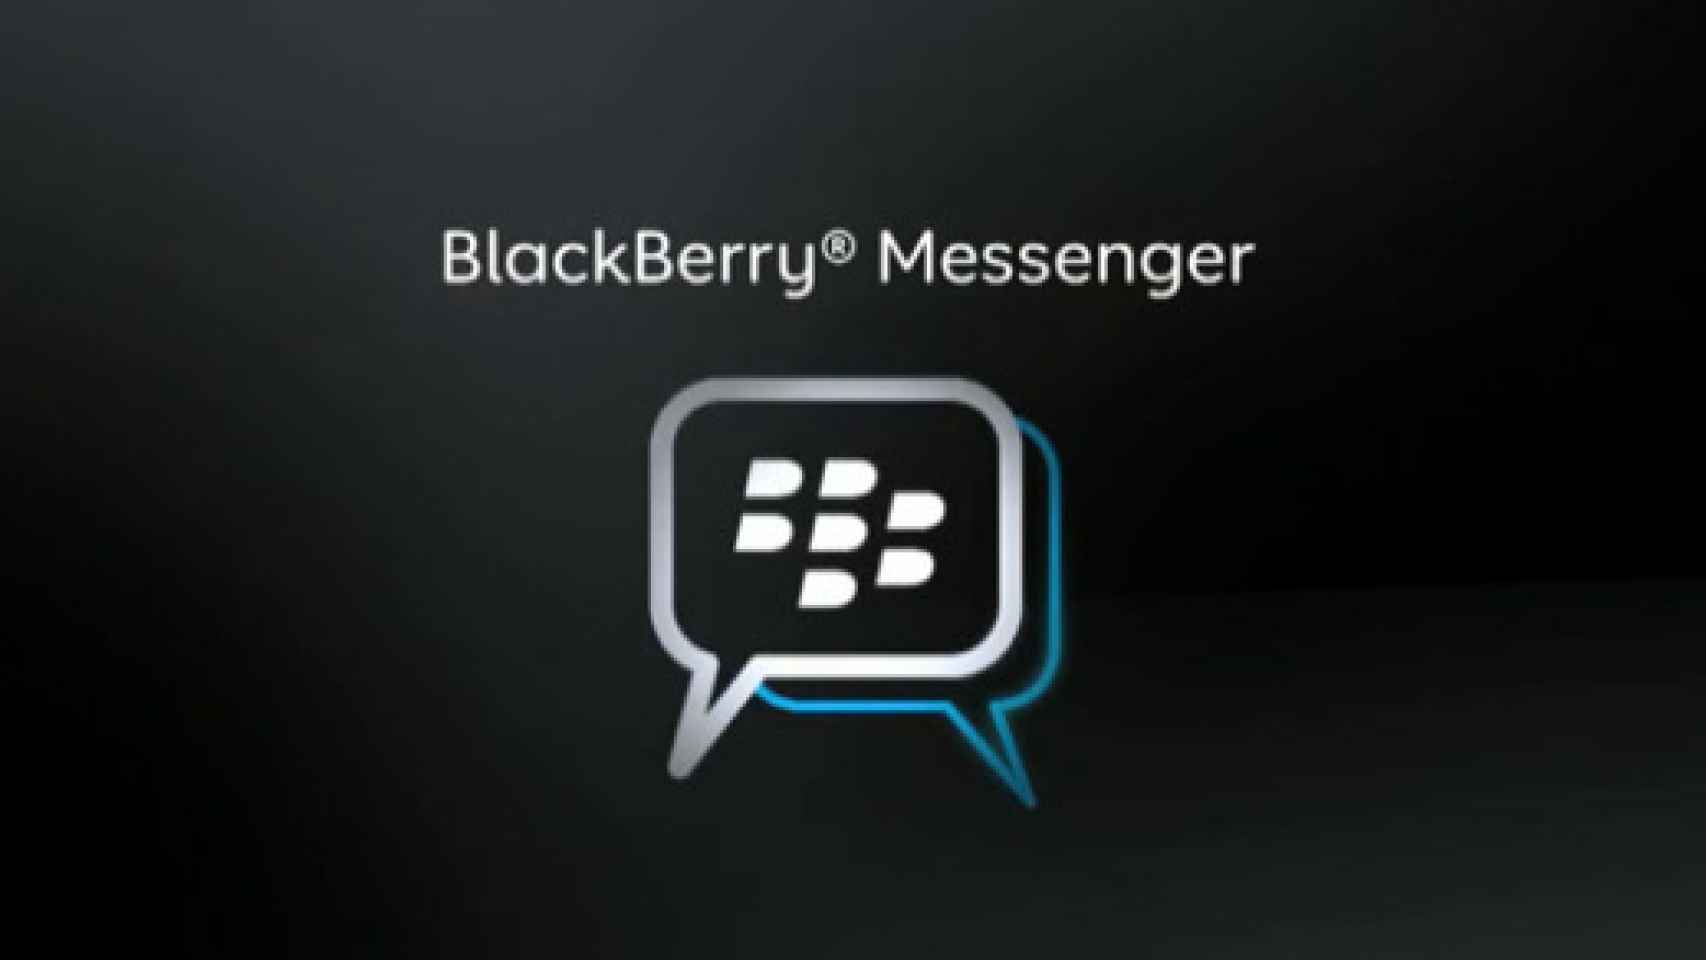 blackberry-messenger-logo